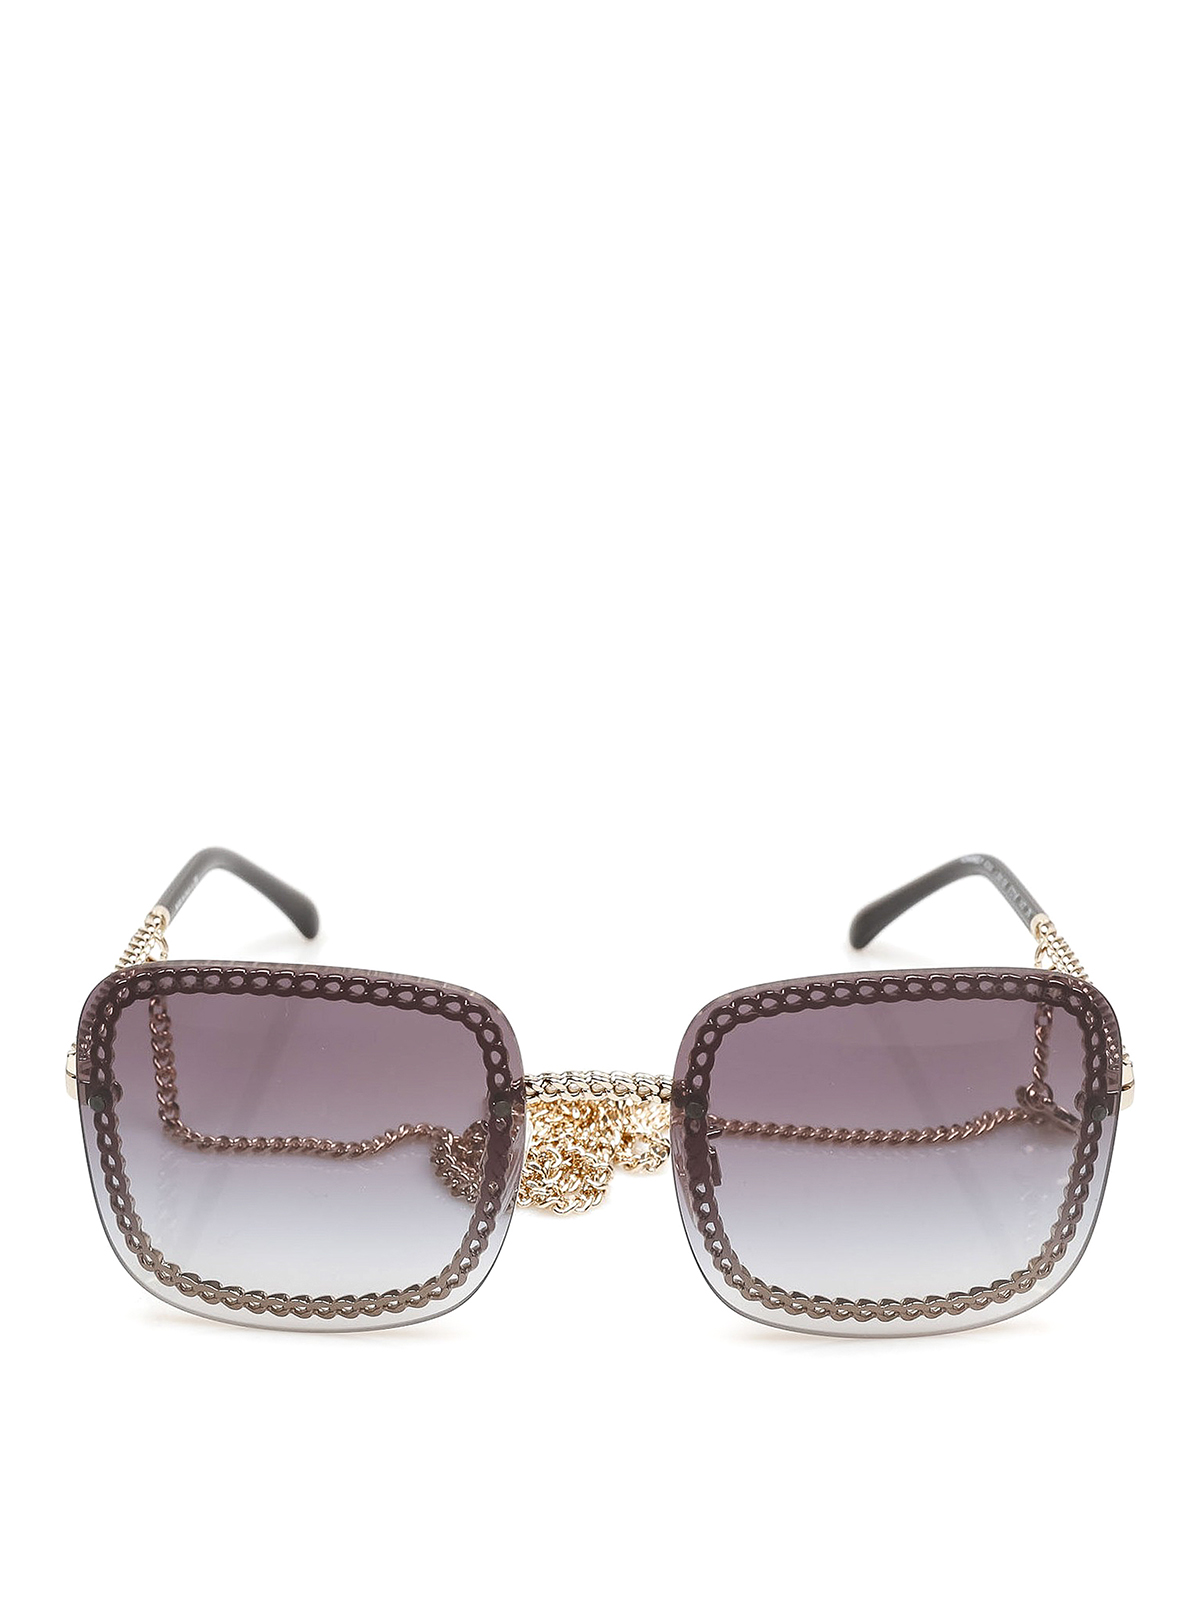 Chanel Square Sunglasses Chain